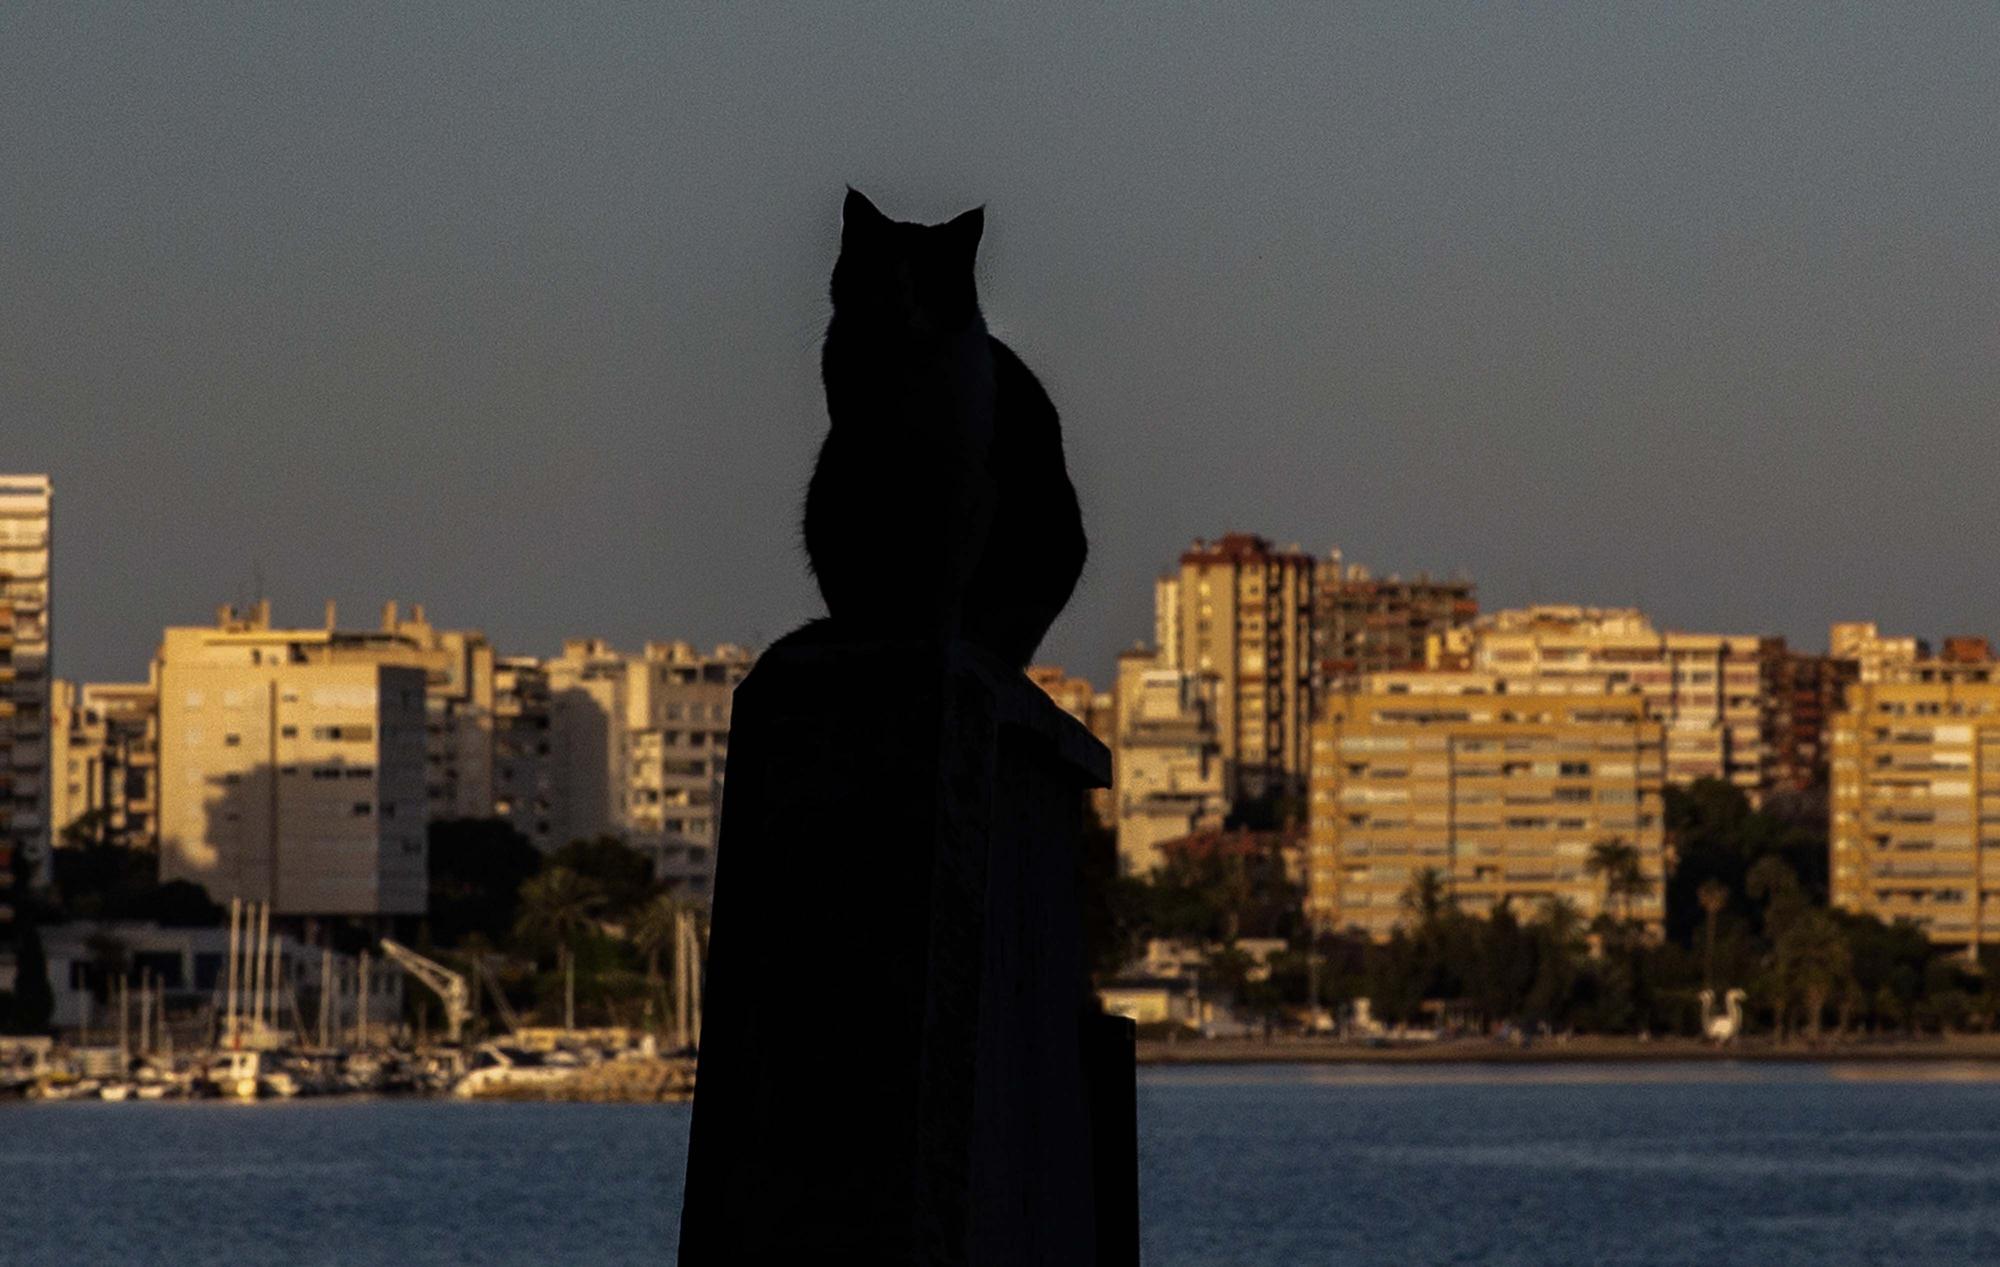 La sombra de un gato resalta sobre el mar de hormigón en la Albufereta